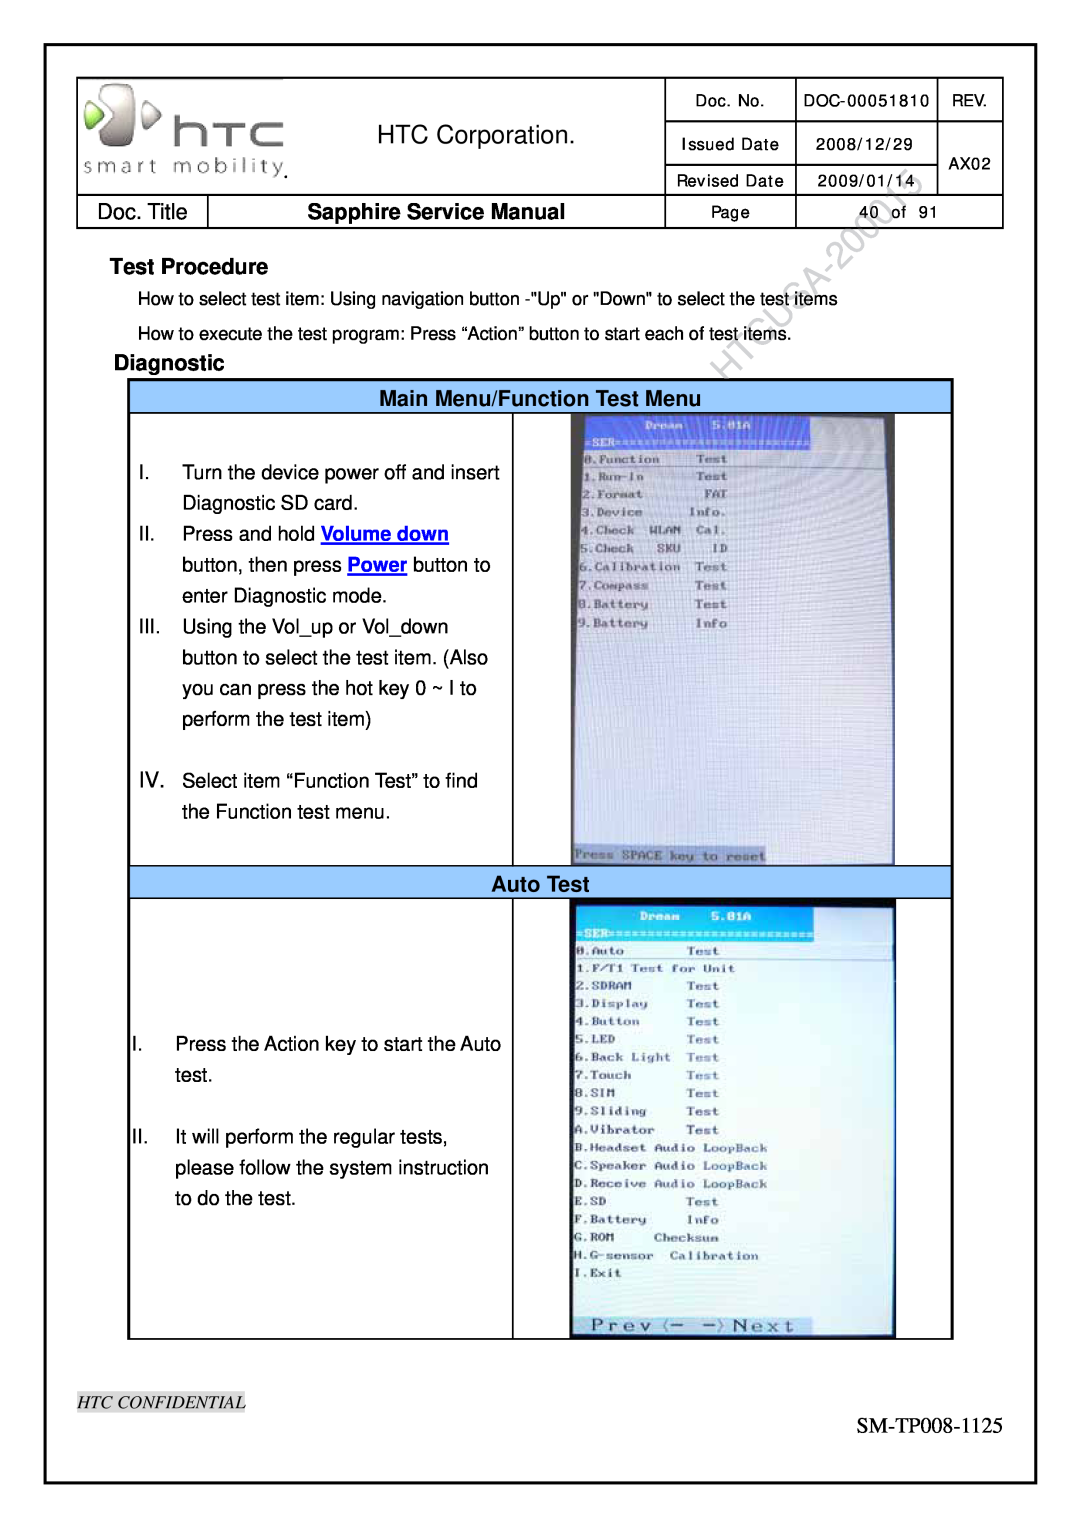 HTC SM-TP008-1125 service manual Test Procedure, Diagnostic Main Menu/Function Test Menu, Auto Test, HTC Corporation 